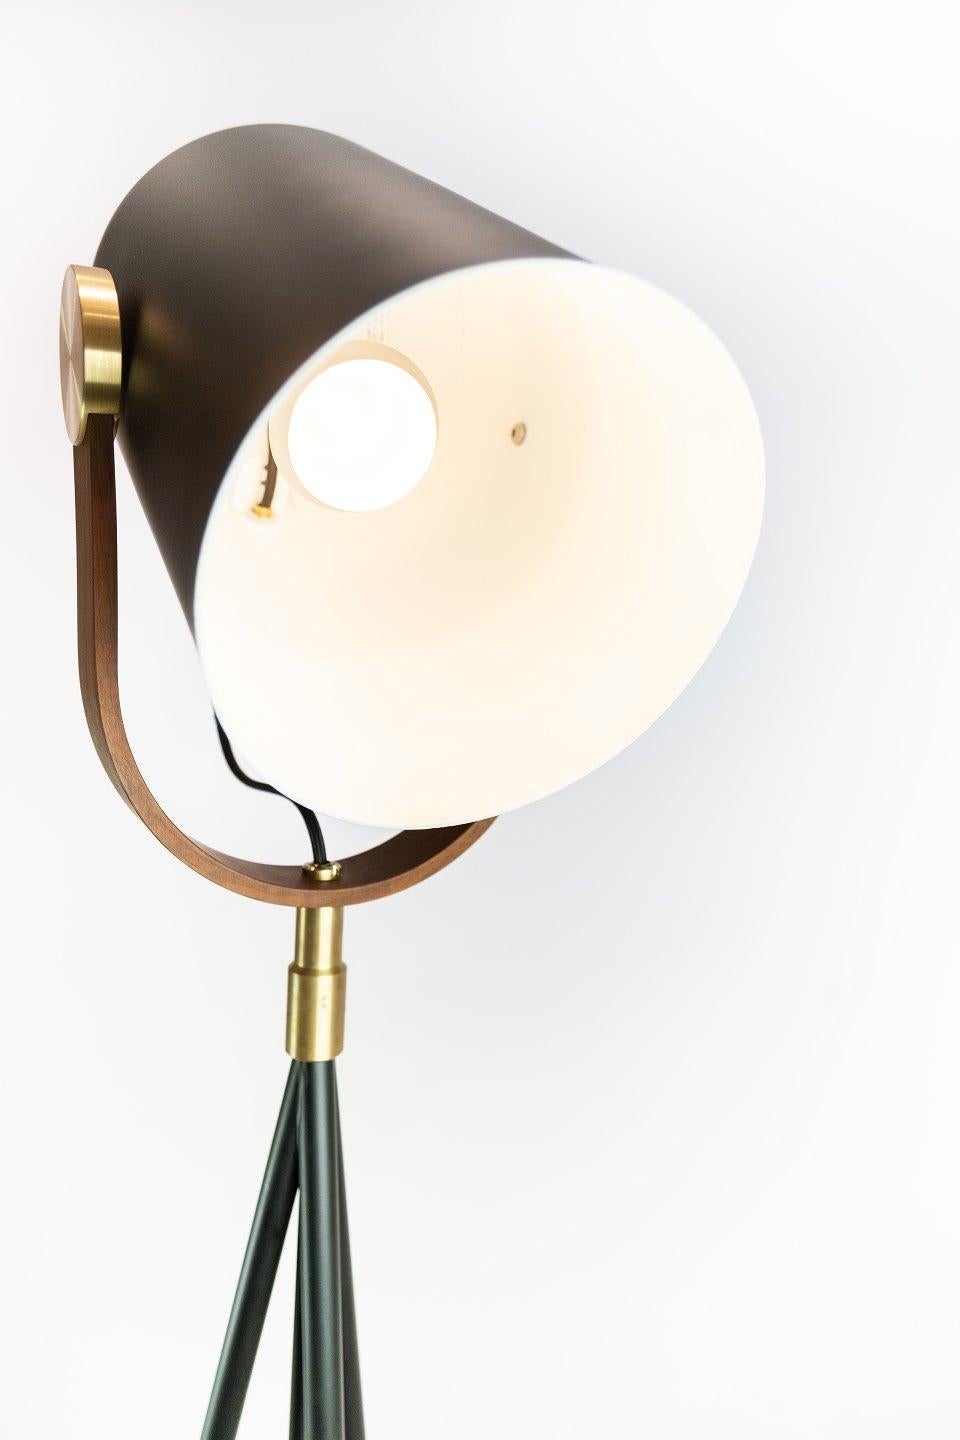 Floor lamp, model Carronade, by Le Klint. The lamp is of black metal and teak.
 